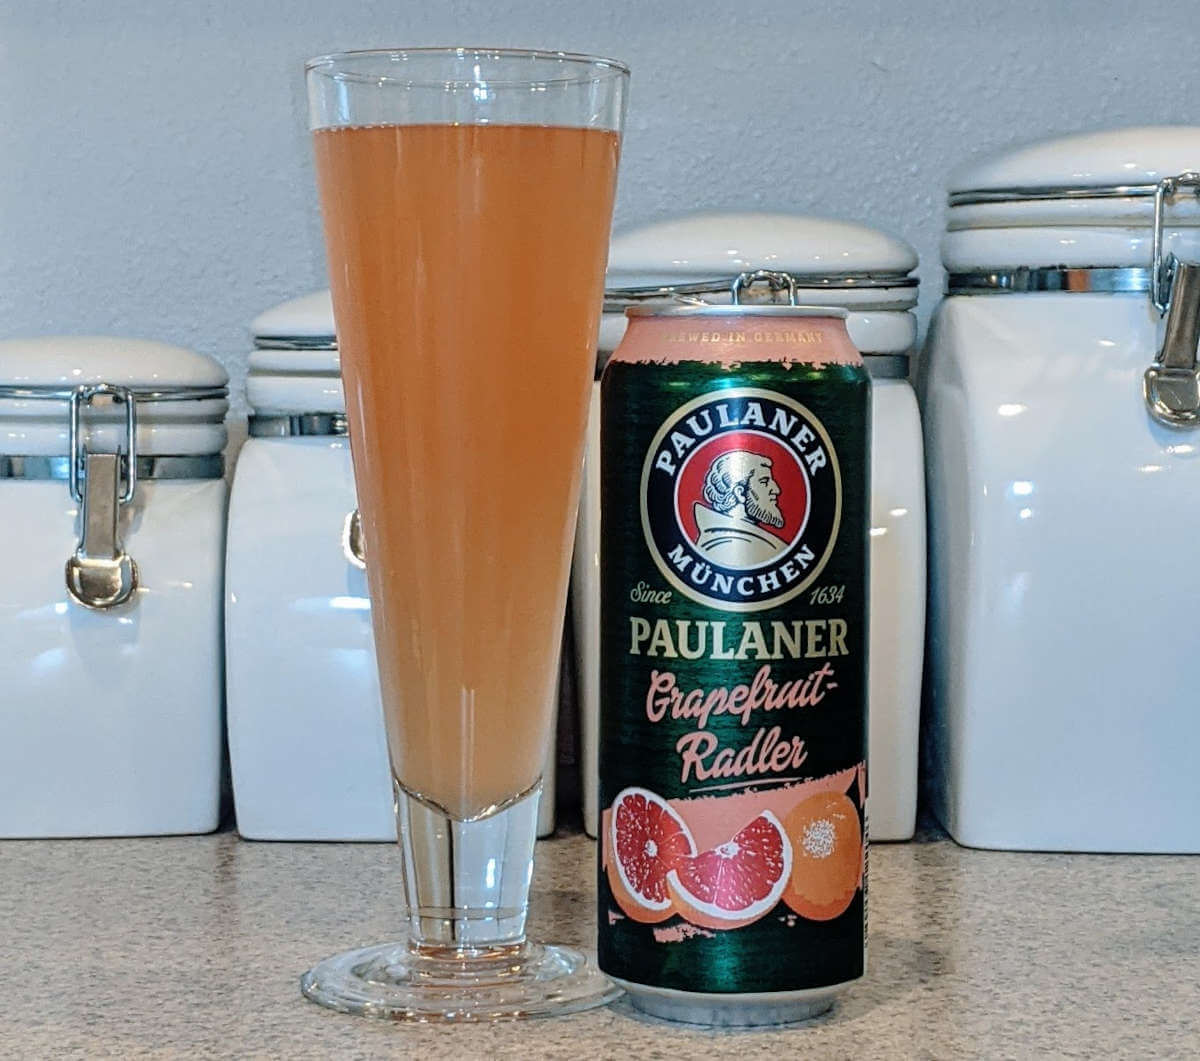 Paulaner Grapefruit Radler for hot summer drinking